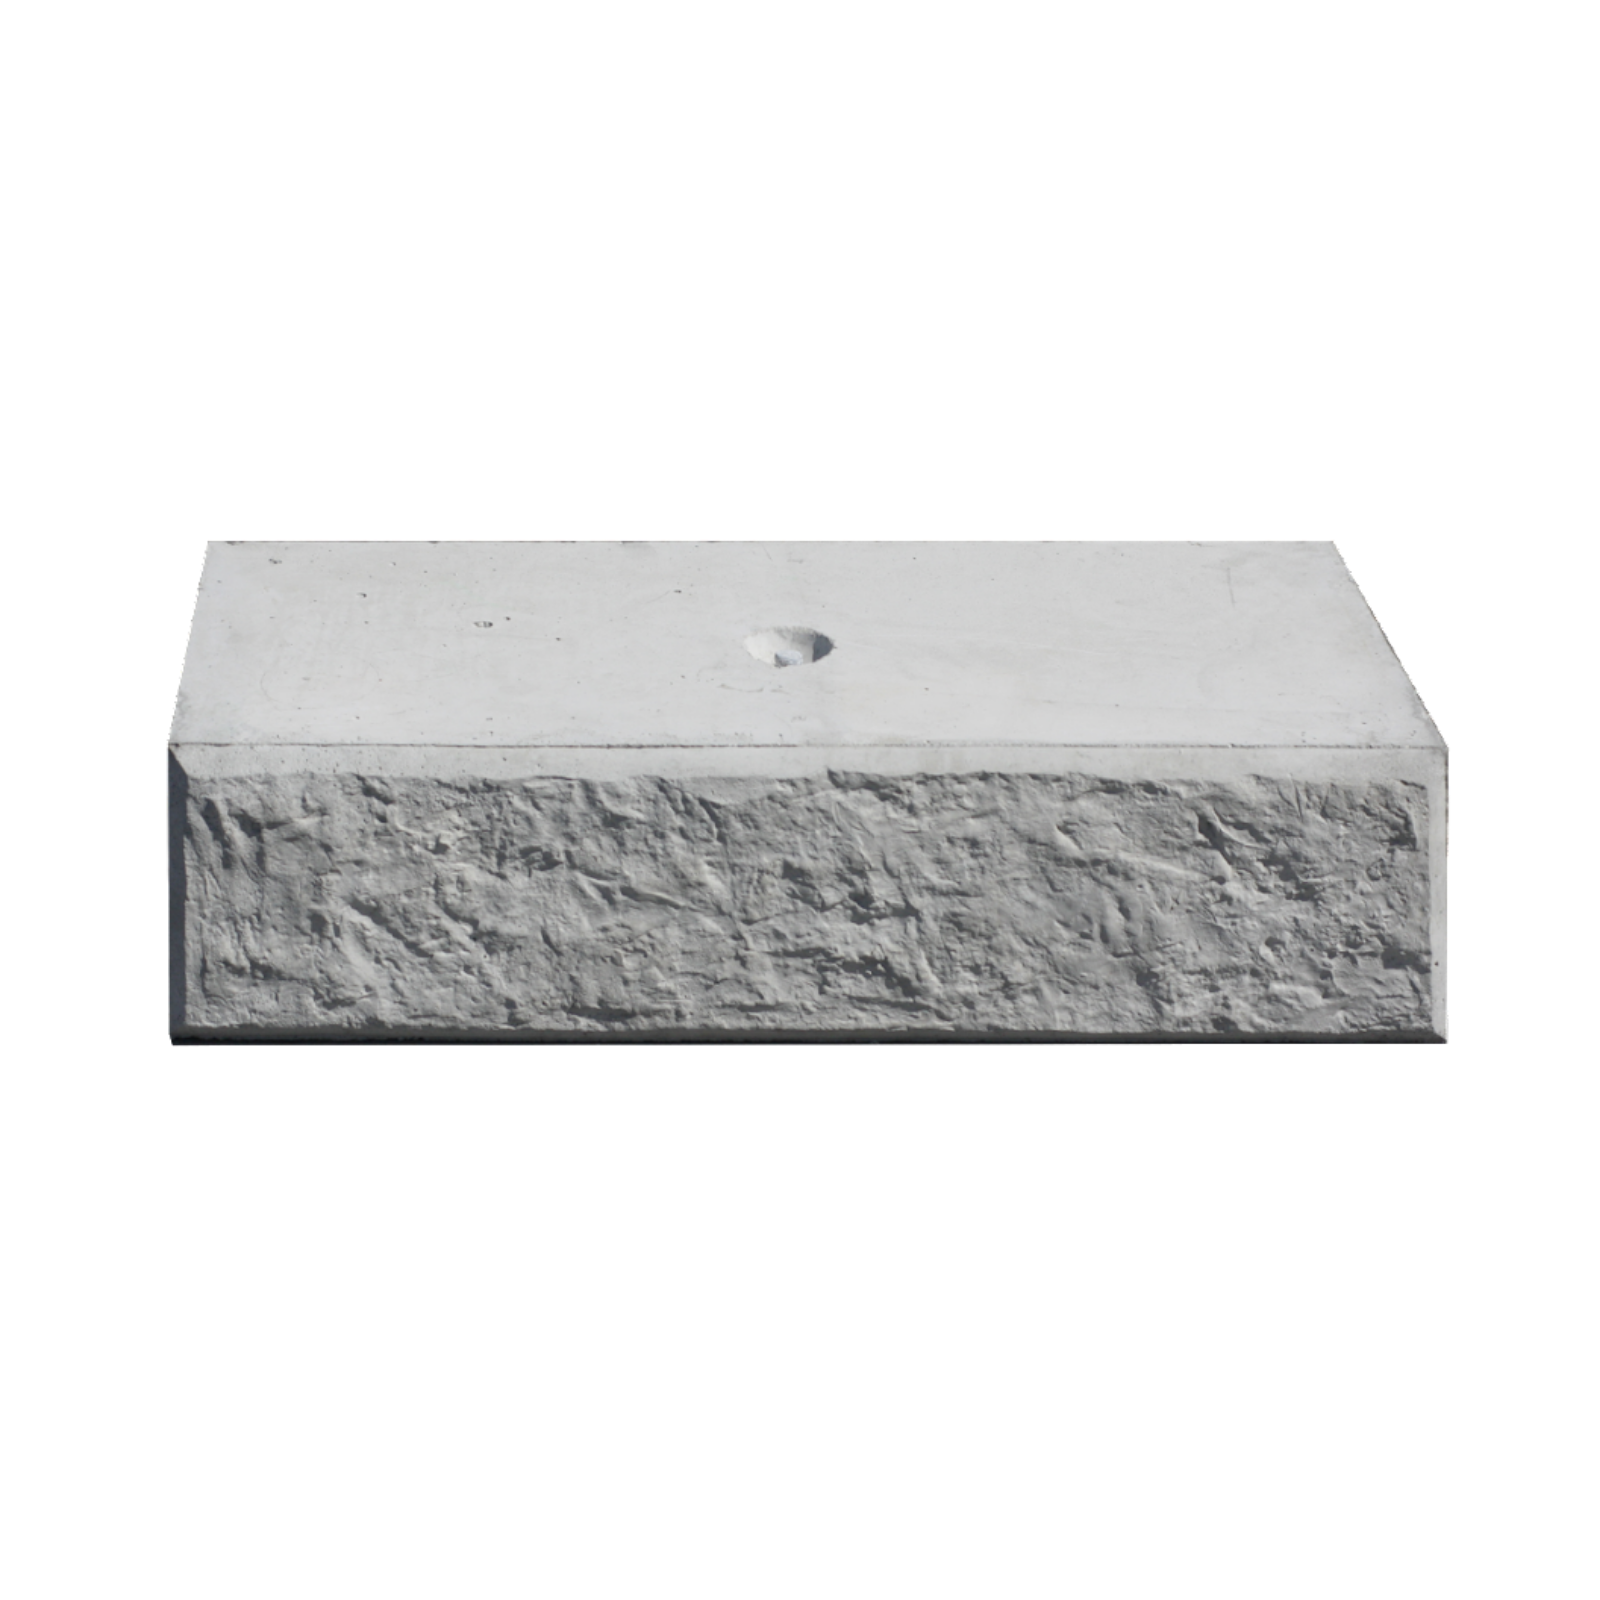 Front view of a 400 Capper Stonebloc Concrete Block